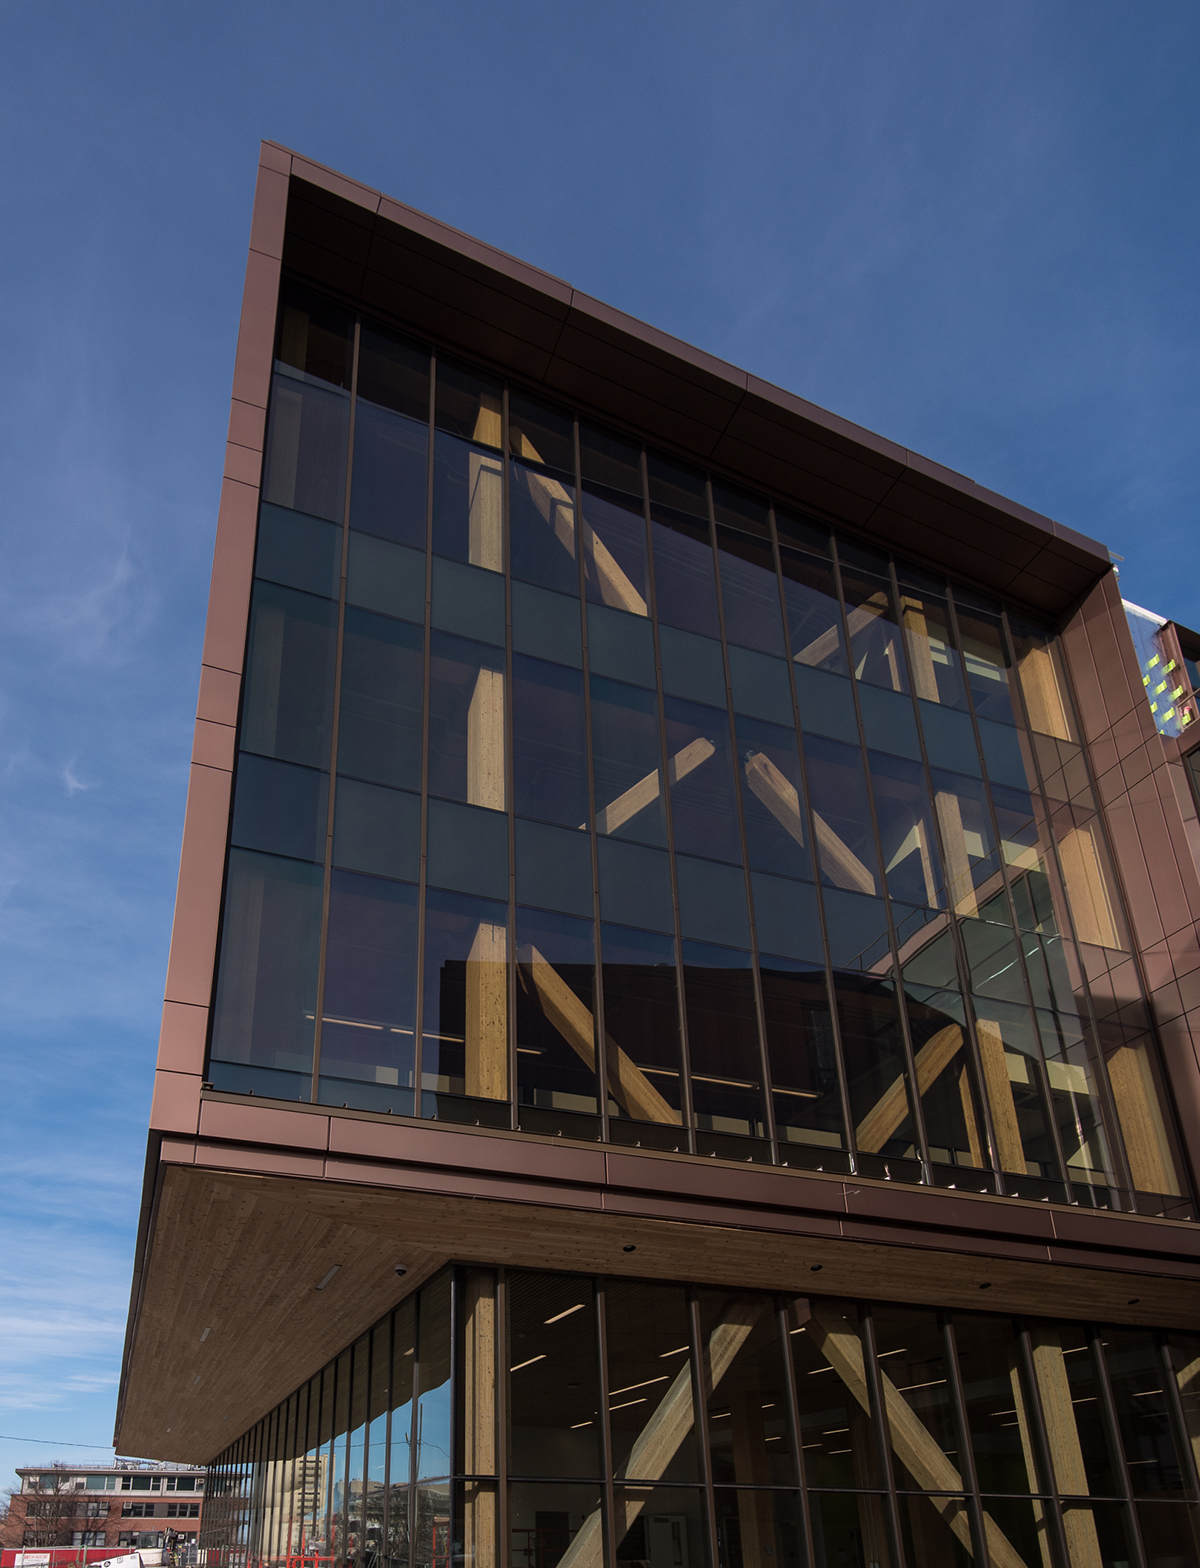 Photo of the glazed facade of the University of Massachusetts, John W. Olver Design Building